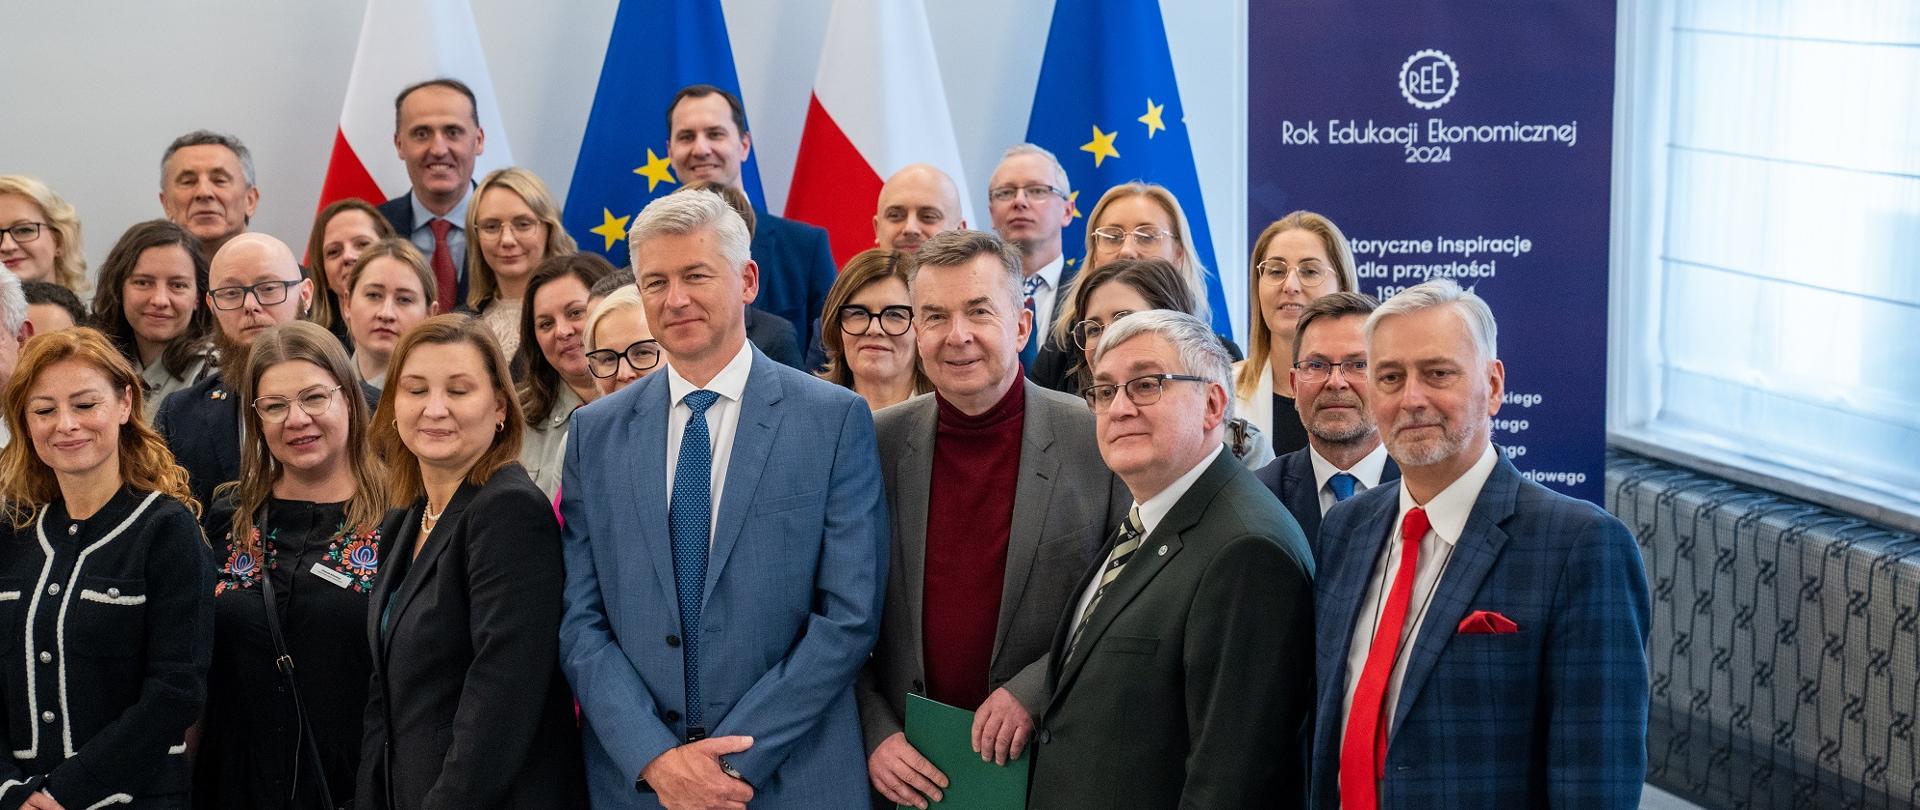 Zdjęcie zbiorowe, na sali stoi duża grupa osób, za nimi pod ścianą flagi Polski i UE.
